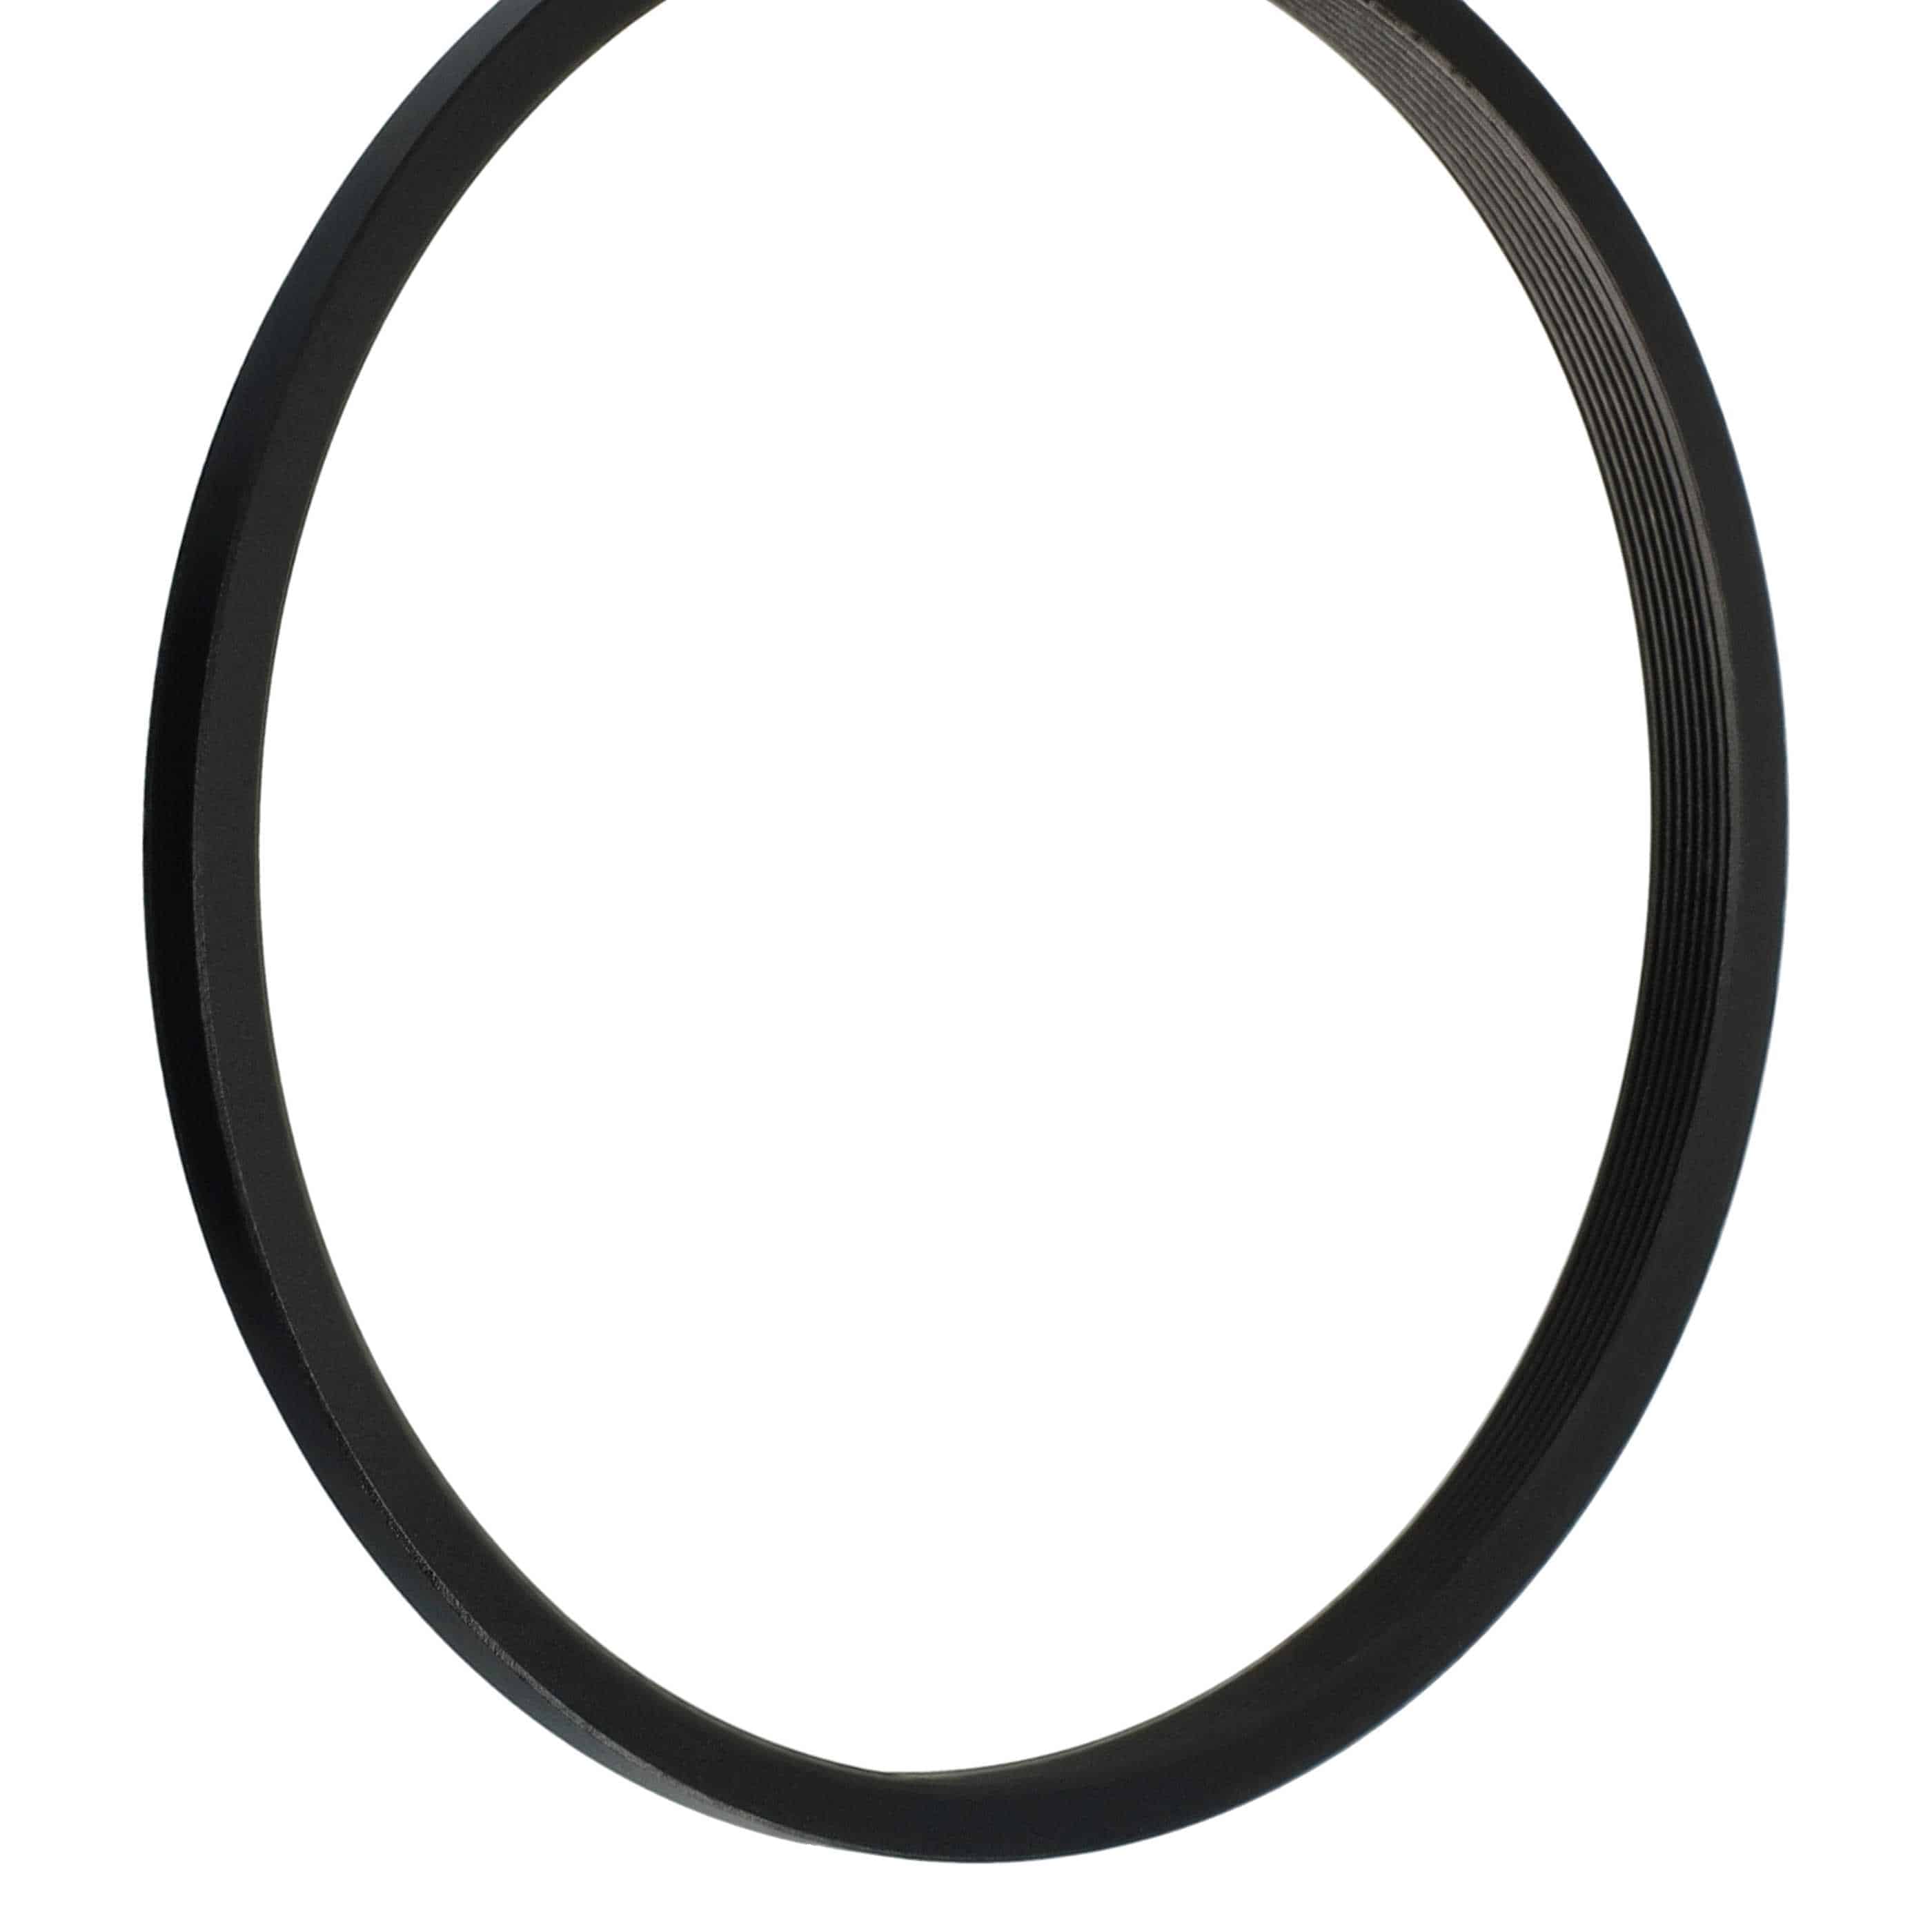 Anello adattatore step-down da 86 mm a 82 mm per obiettivo fotocamera - Adattatore filtro, metallo, nero